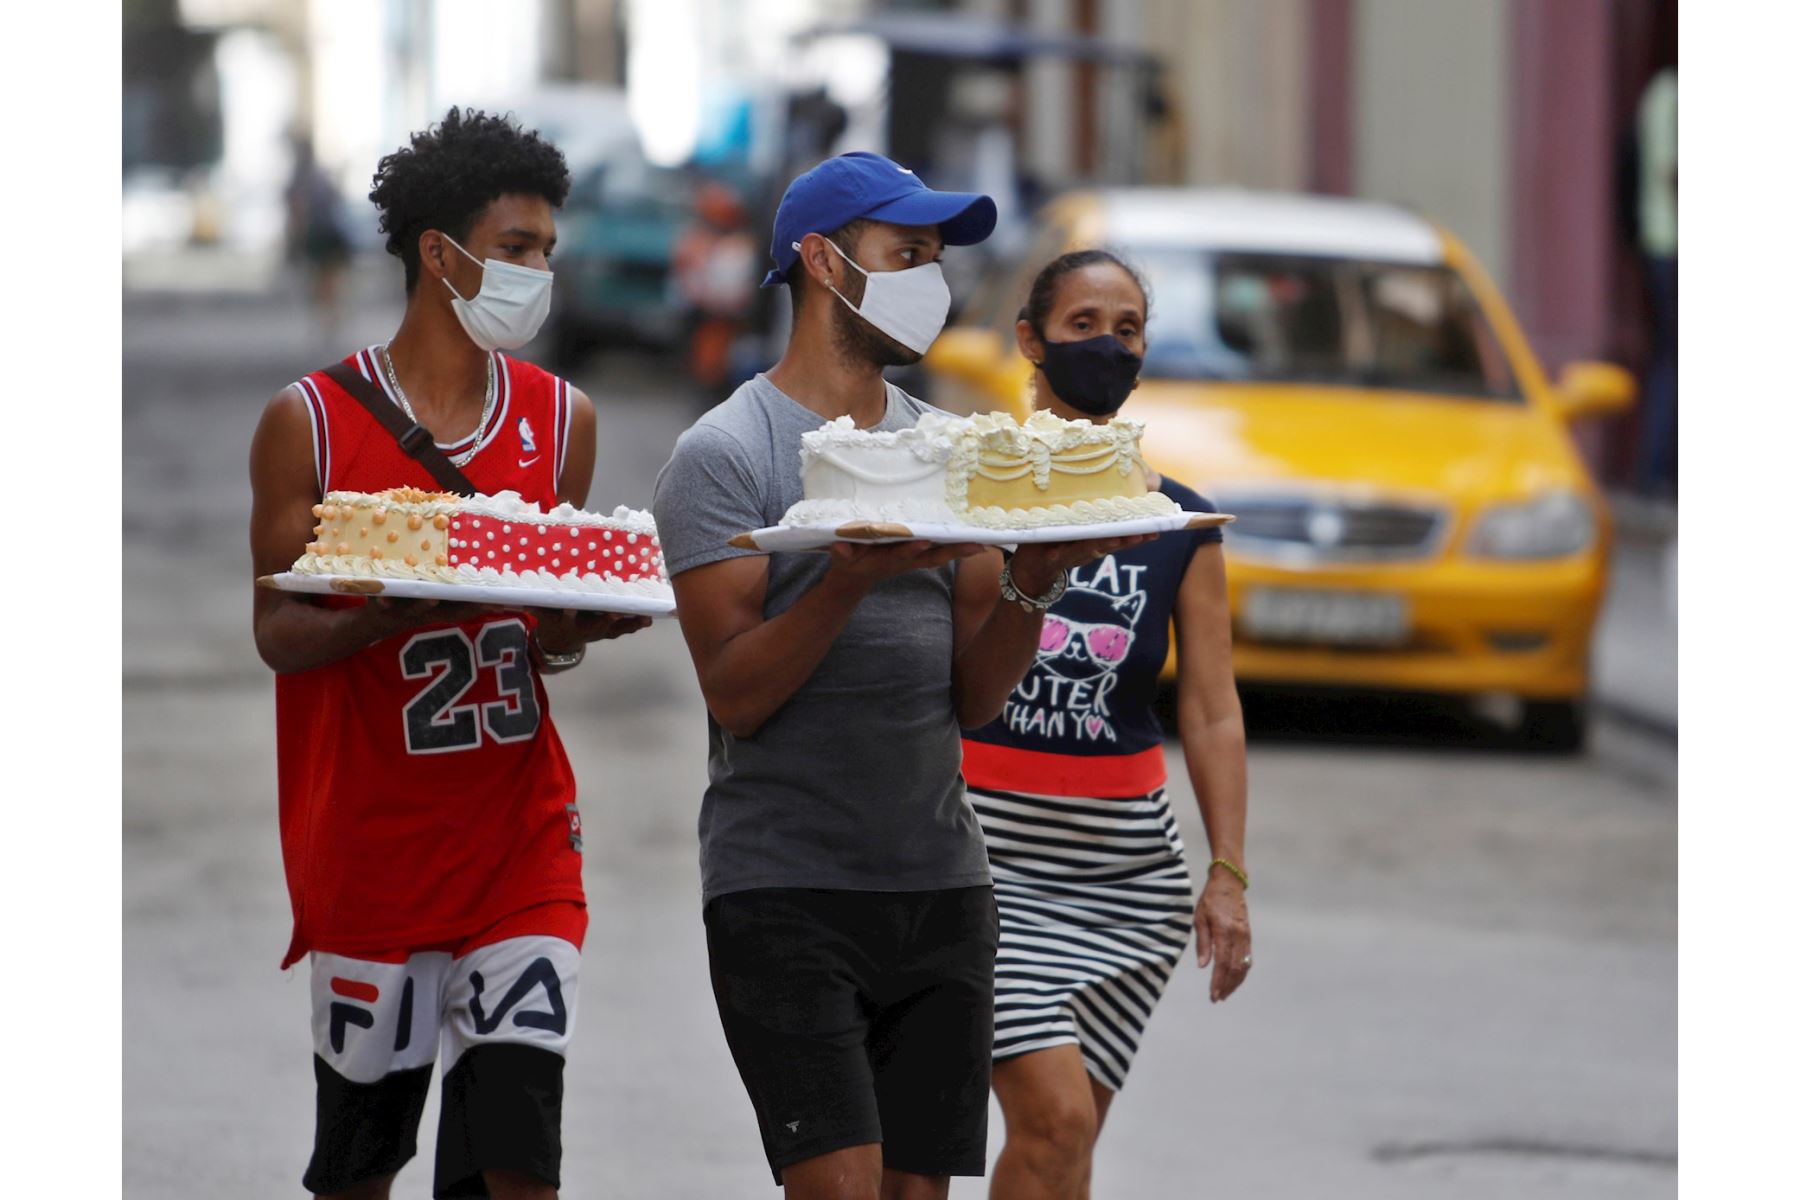 Varias personas cargan hoy unos pasteles en La Habana (Cuba). A pesar del avance de la pandemia en Cuba, donde se registraron 923 casos este jueves, la mitad de ellos en La Habana, los habitantes de la capital cubana continúan con su laborioso día a día. EFE/Yander Zamora